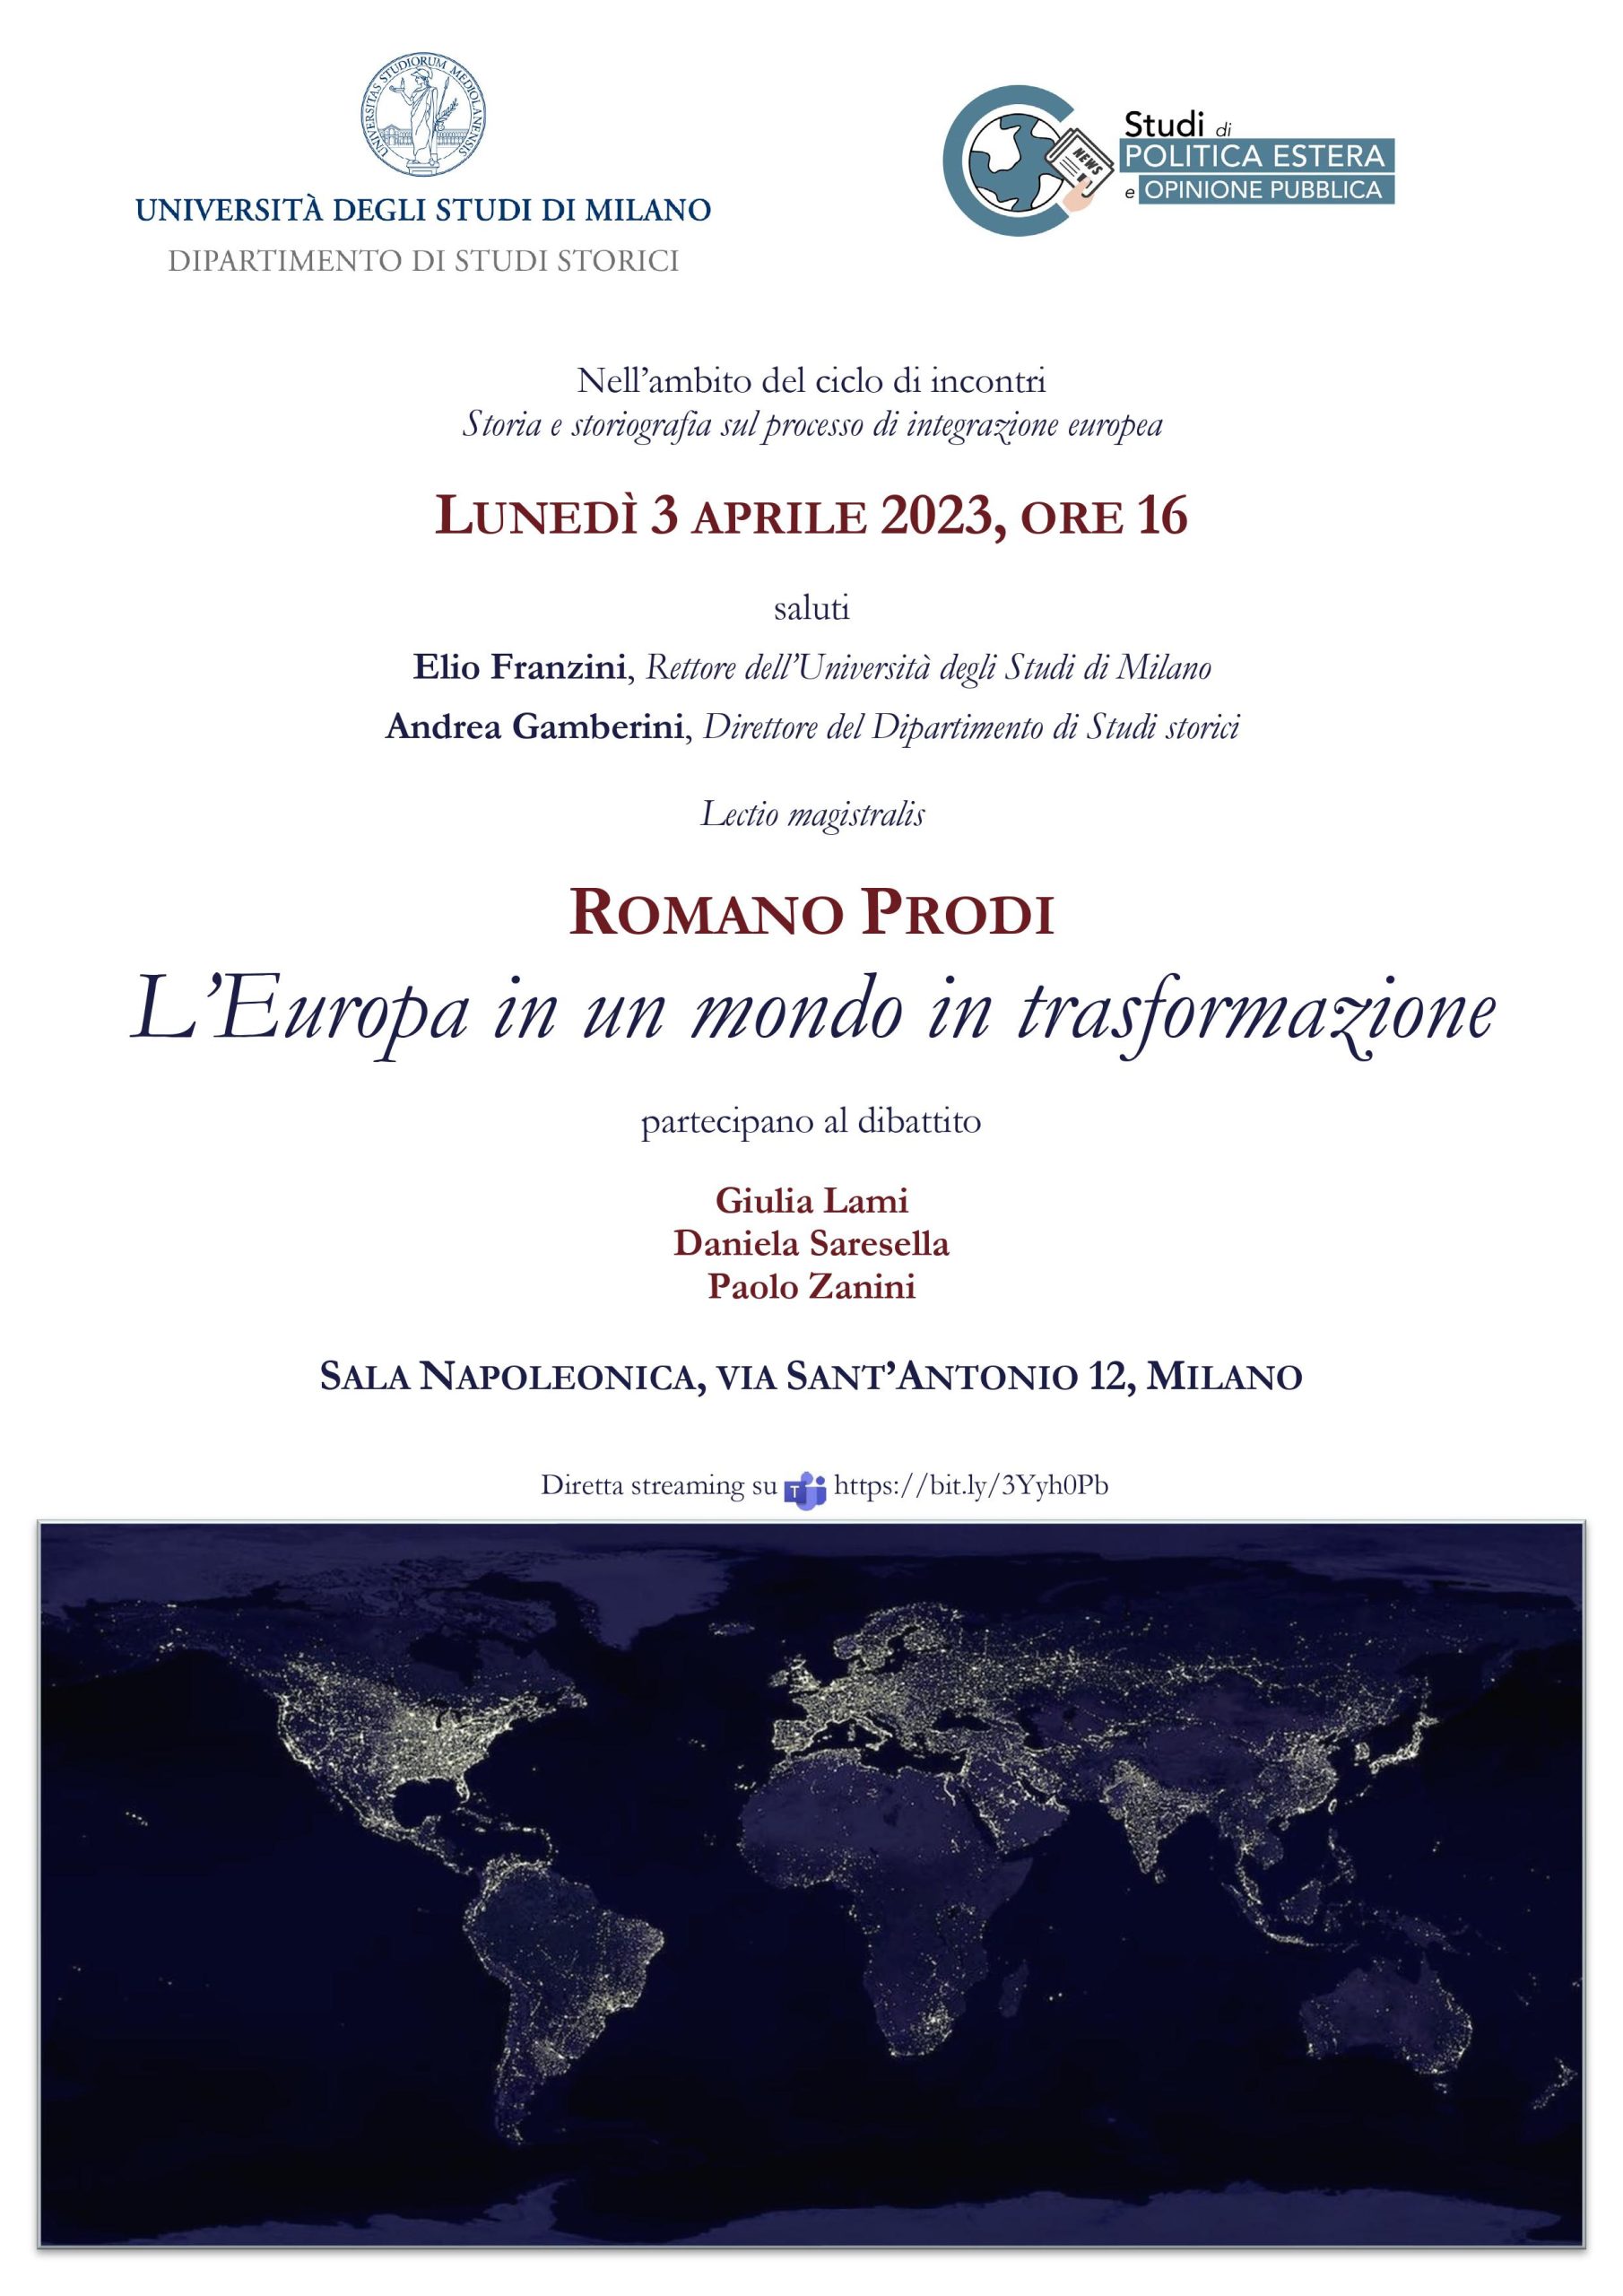 L’Europa in un mondo in trasformazione. Conferenza di Romano Prodi, lunedì 3 aprile 2023